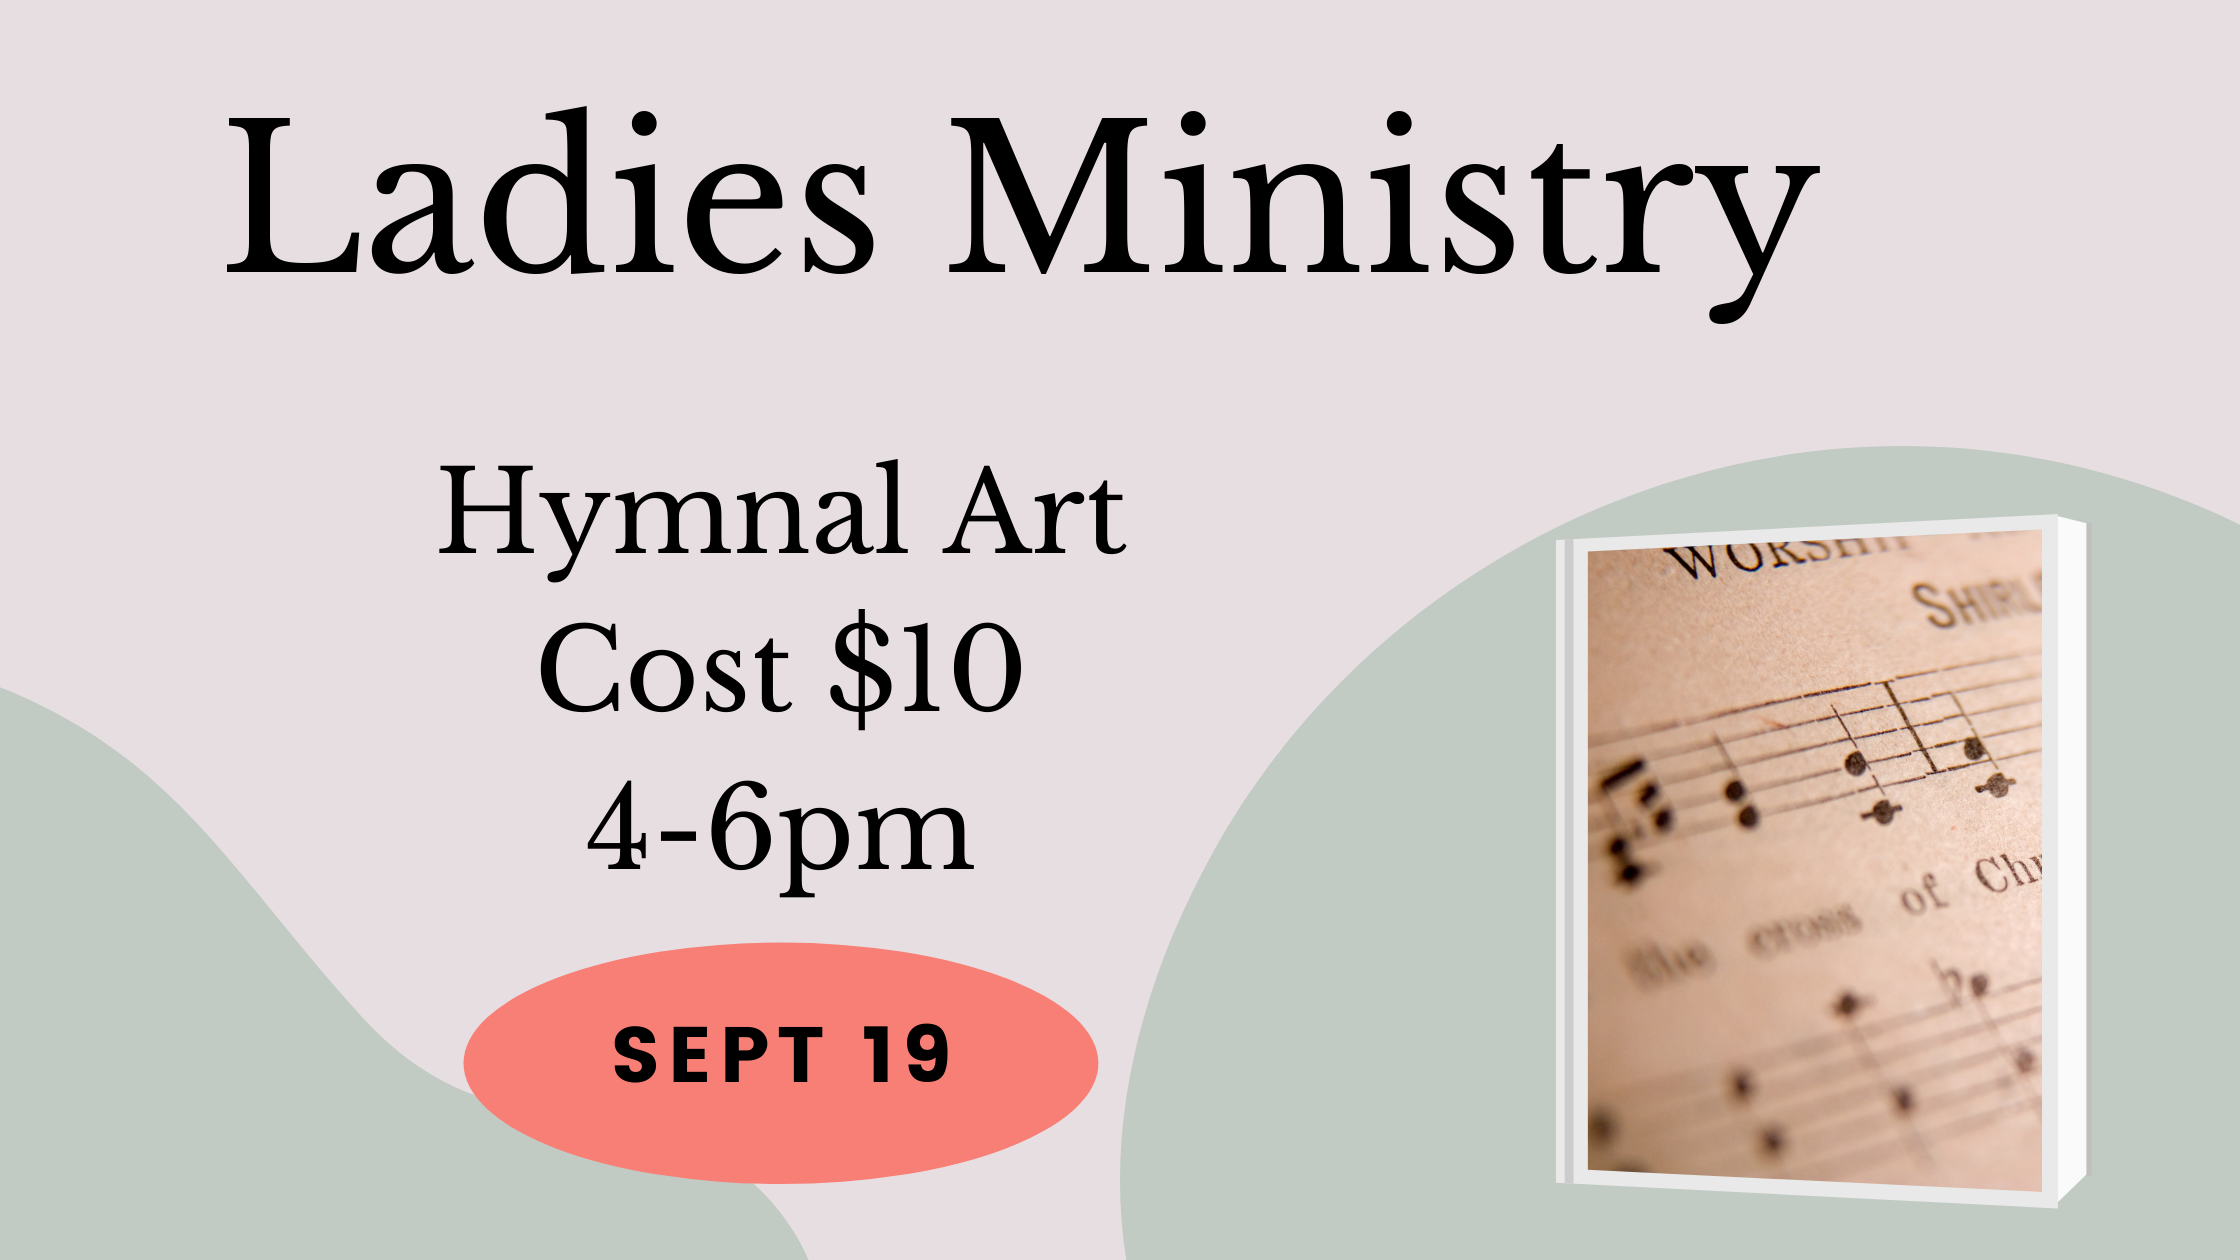 Ladies Ministry Hymnal Art